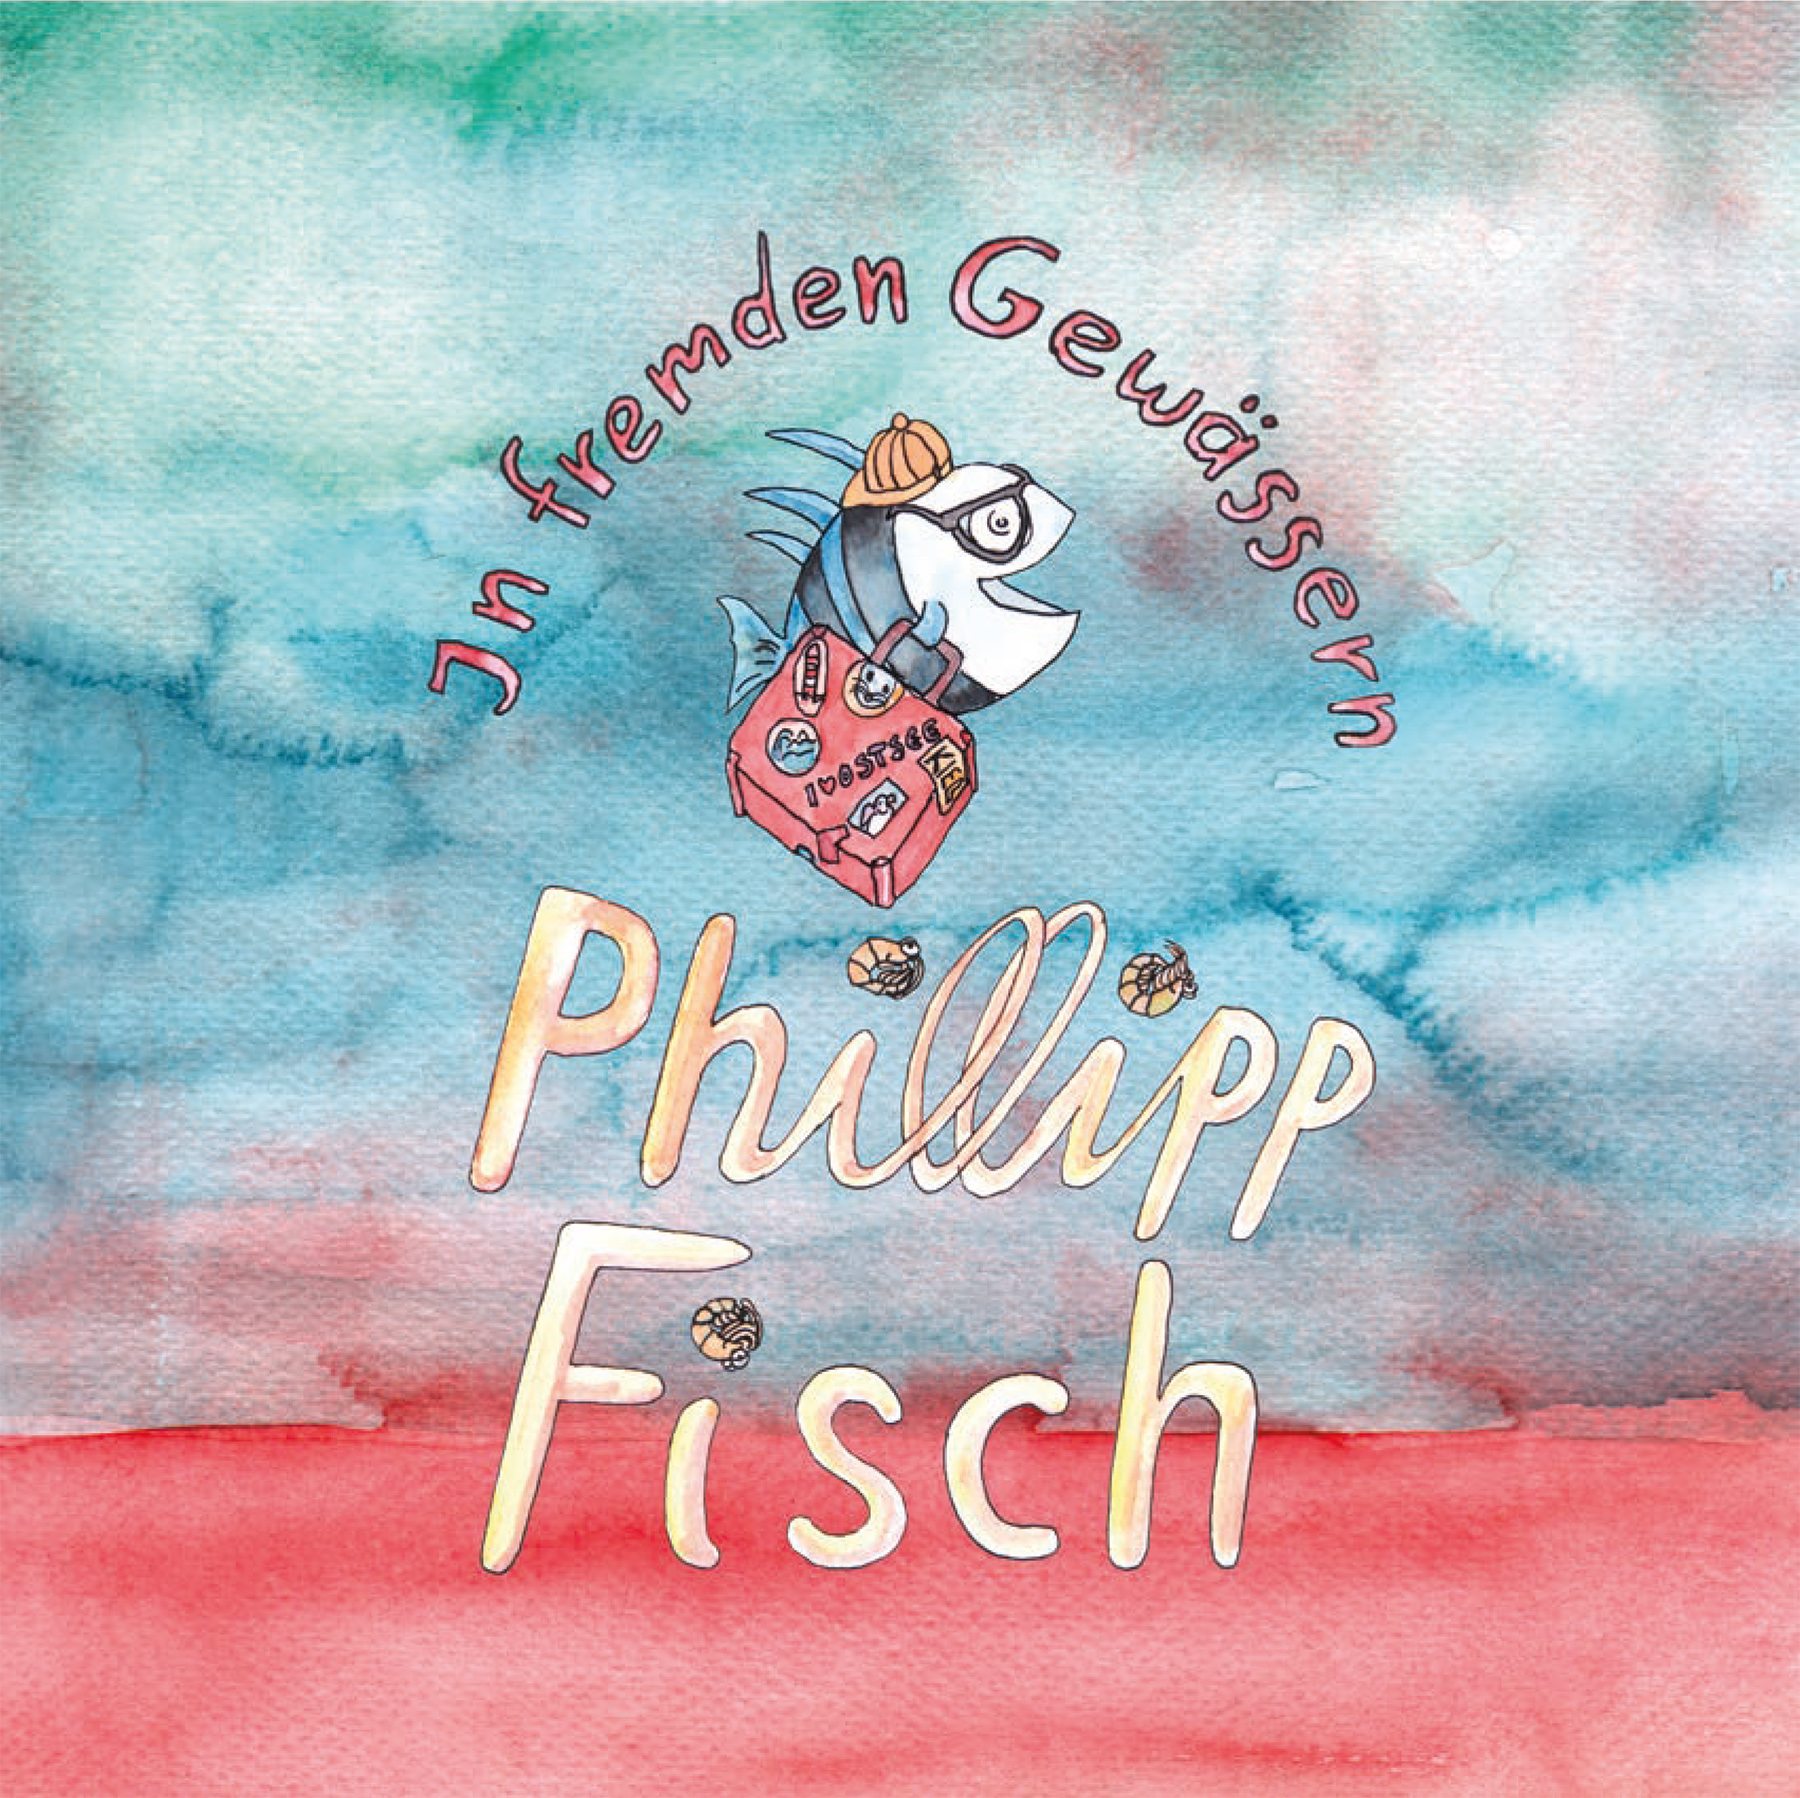 Philipp Fisch